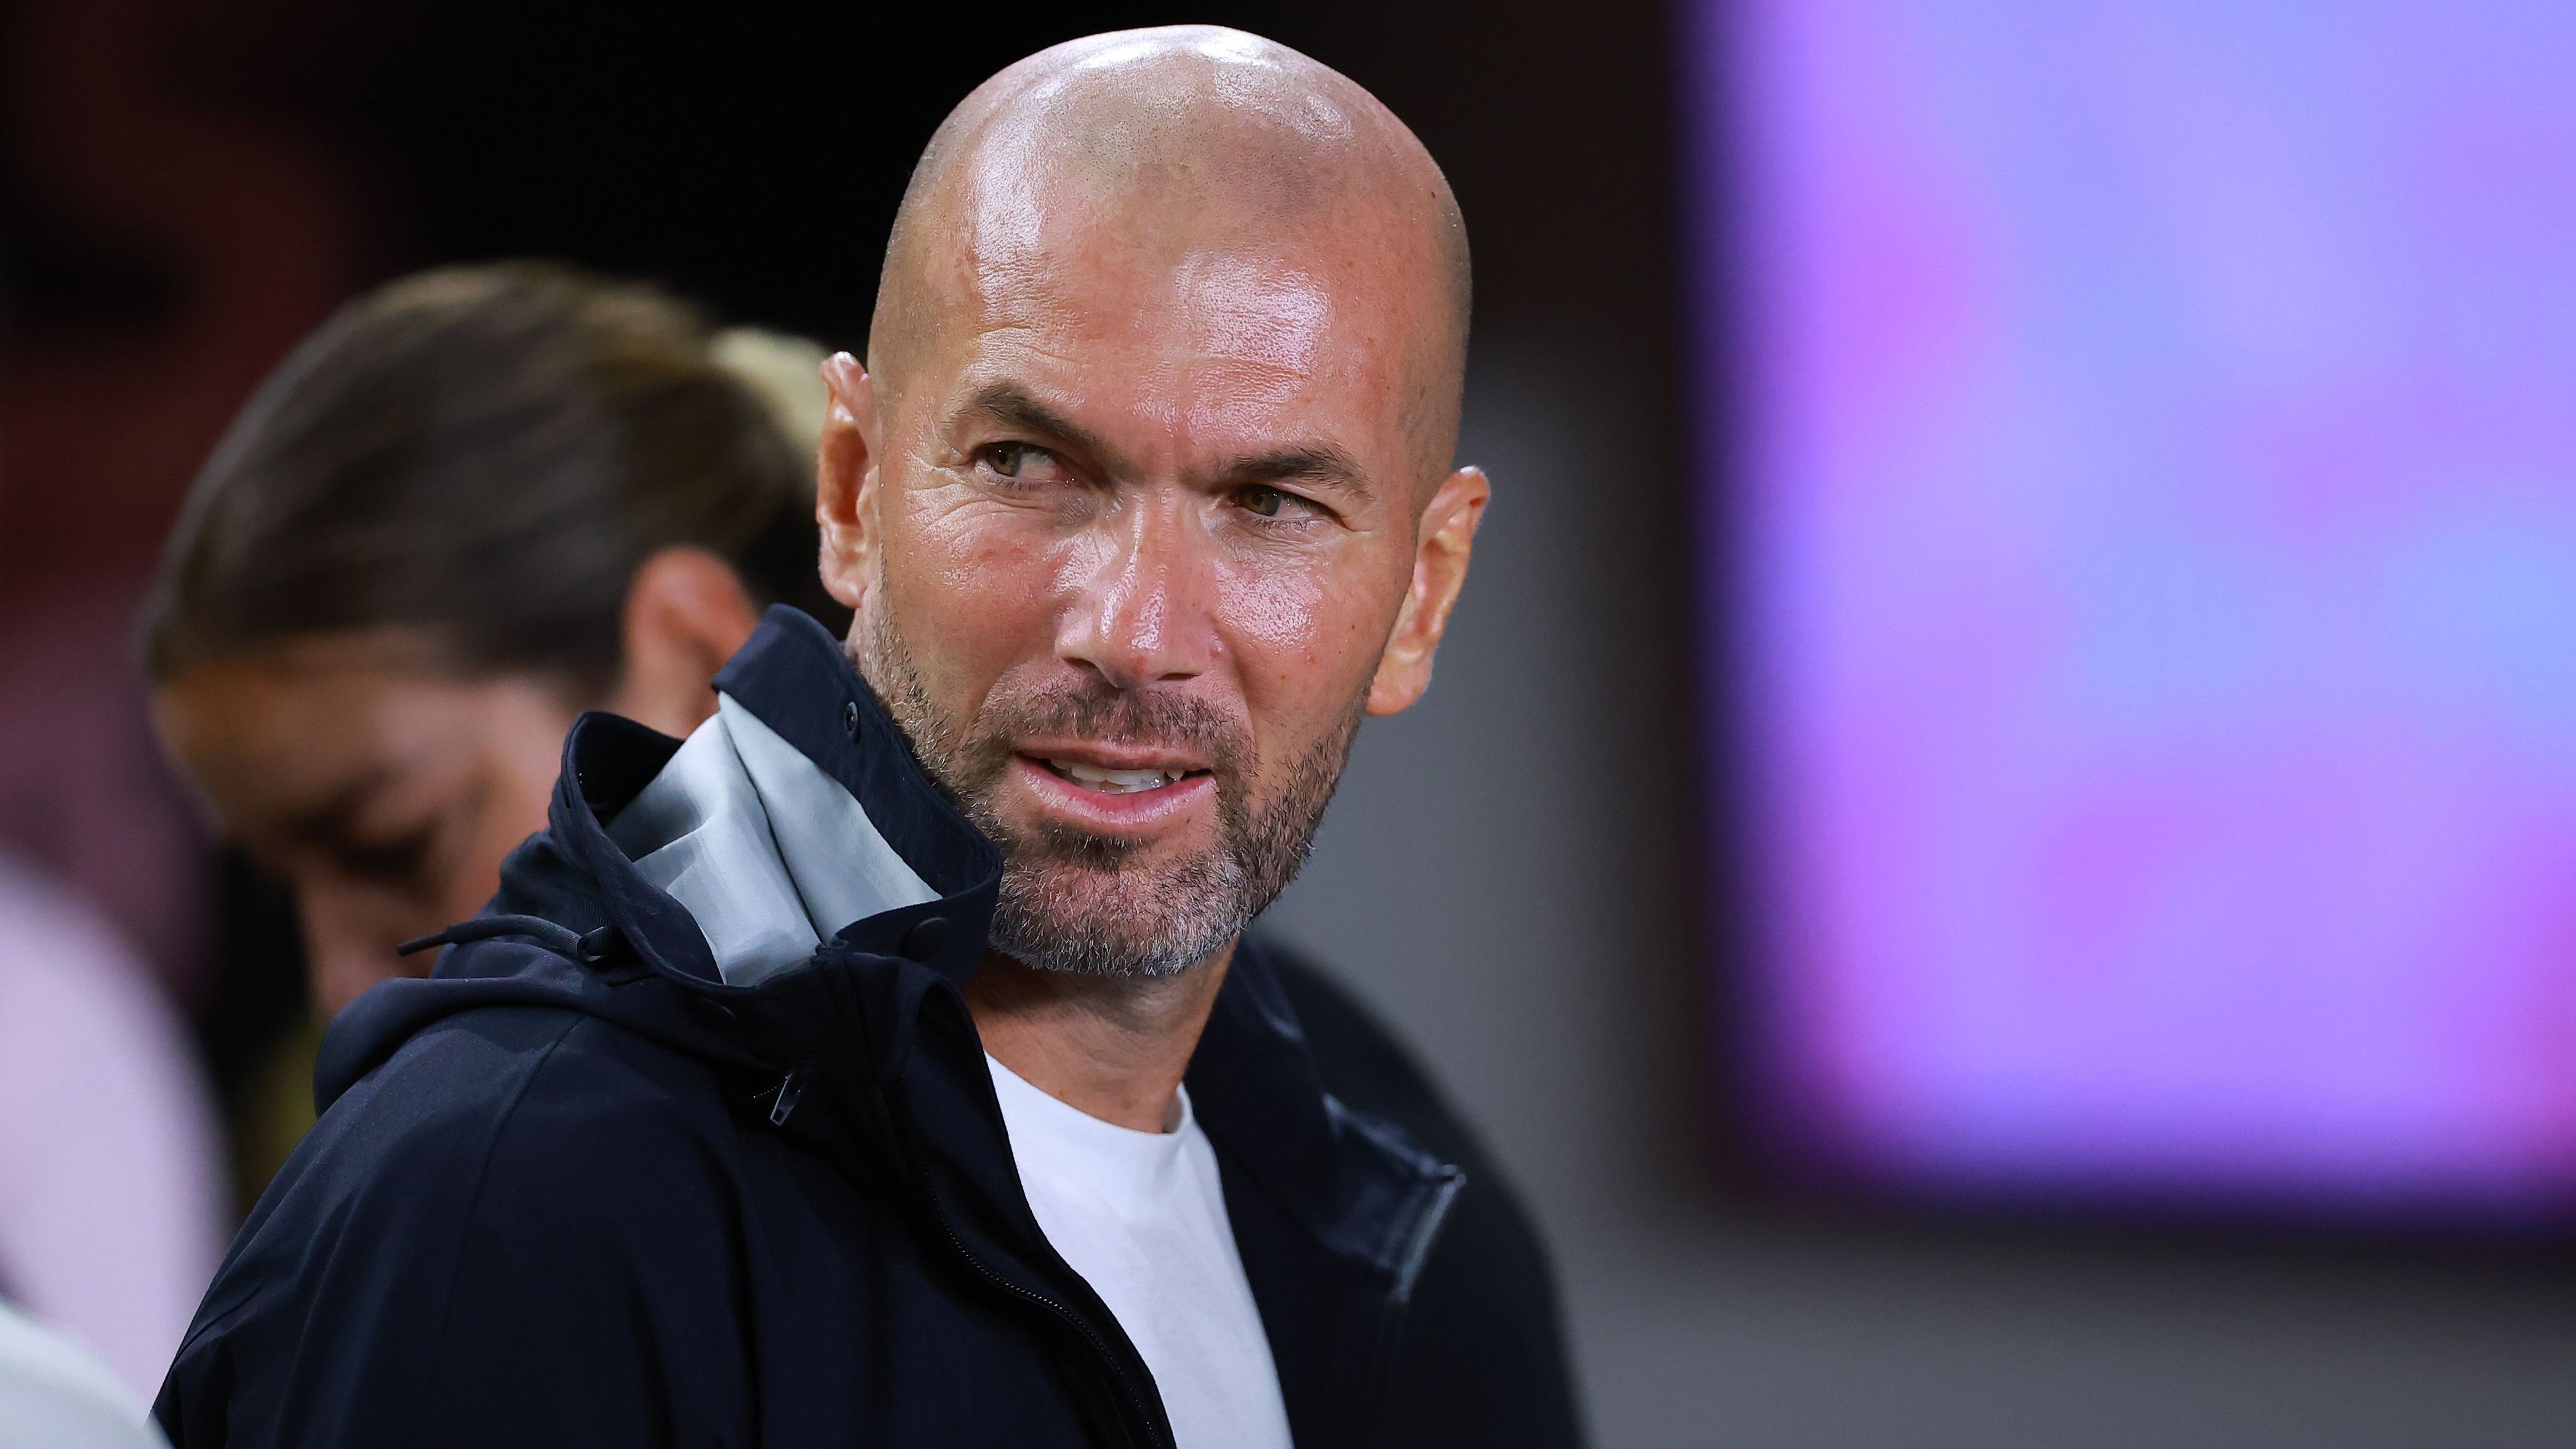 <strong>Zinedine Zidane (vereinslos)</strong><br>Der Name des Franzosen ist einer, der fast immer fällt, wenn ein Topklub auf Trainersuche ist. Zinedine Zidane gewann mit Real Madrid zwischen 2016 und 2018 drei Mal in Folge die Champions League, ist seit dem Sommer 2021 vereinslos, als seine zweite Ära als Trainer der "Königlichen" endete. Zidane wurde zuletzt auch als möglicher Tuchel-Nachfolger in München gehandelt.